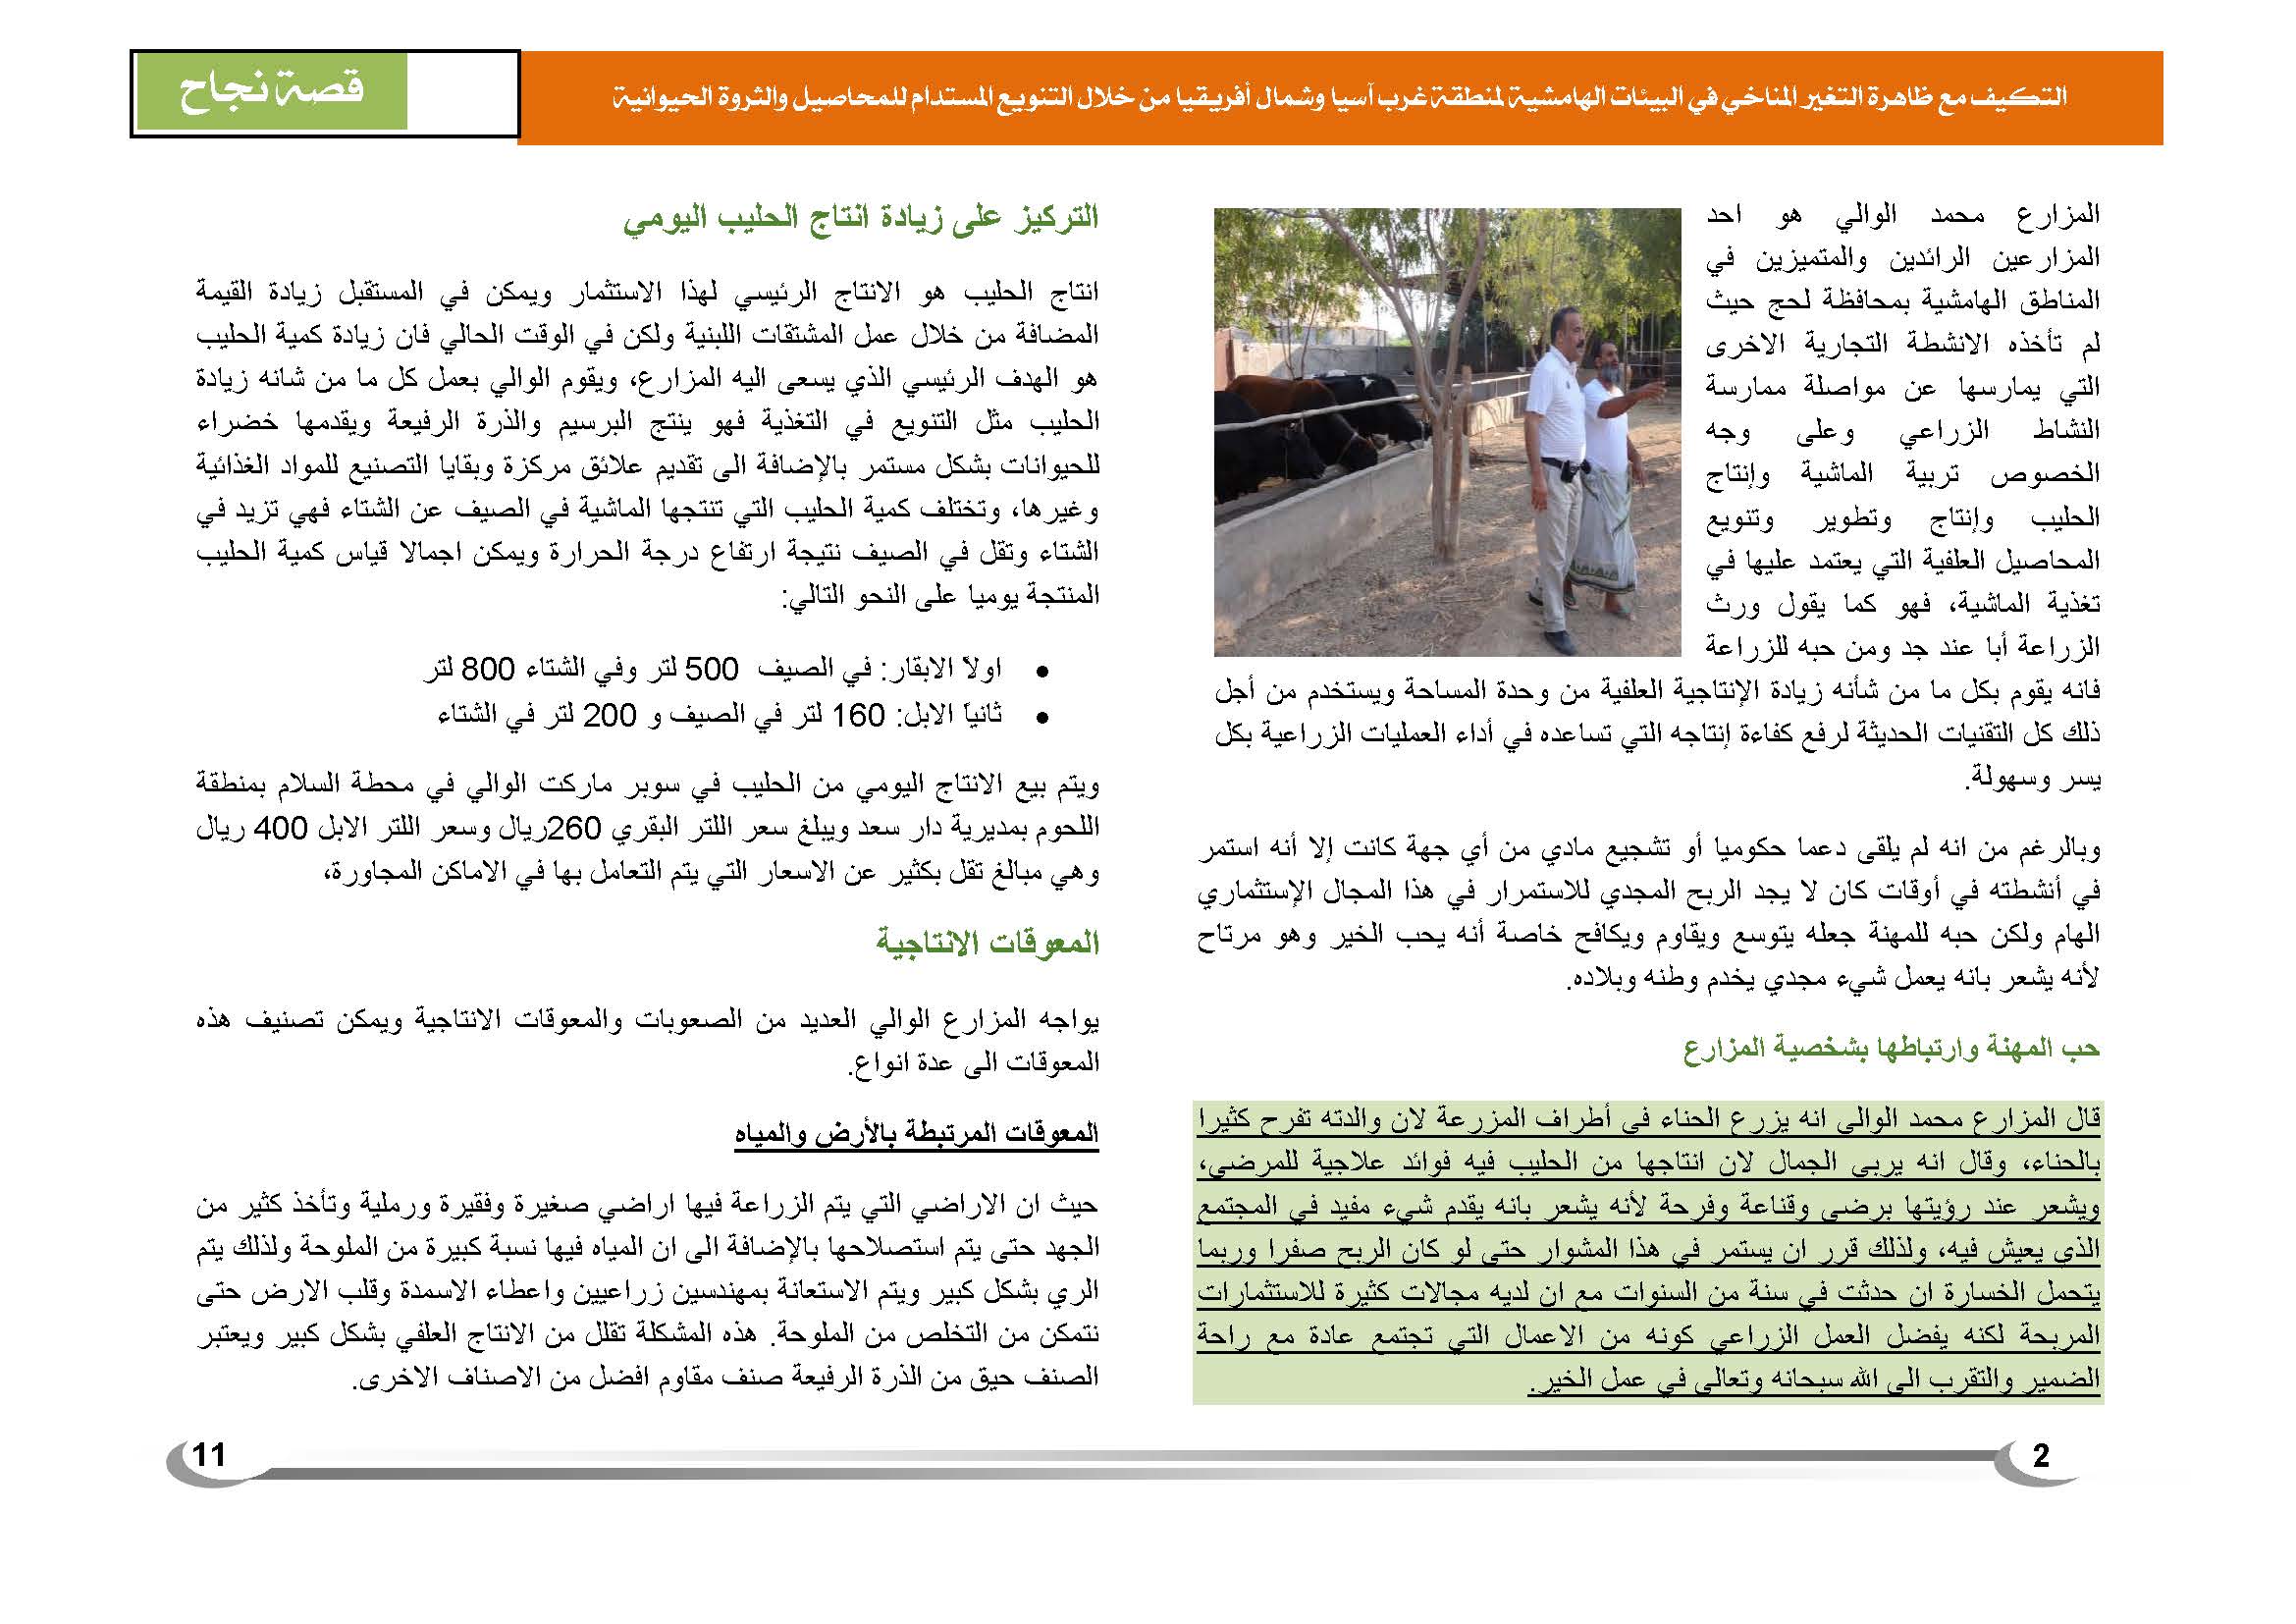 قصة نجاح في الإنتاج الزراعي في اليمن (1)_Page_3